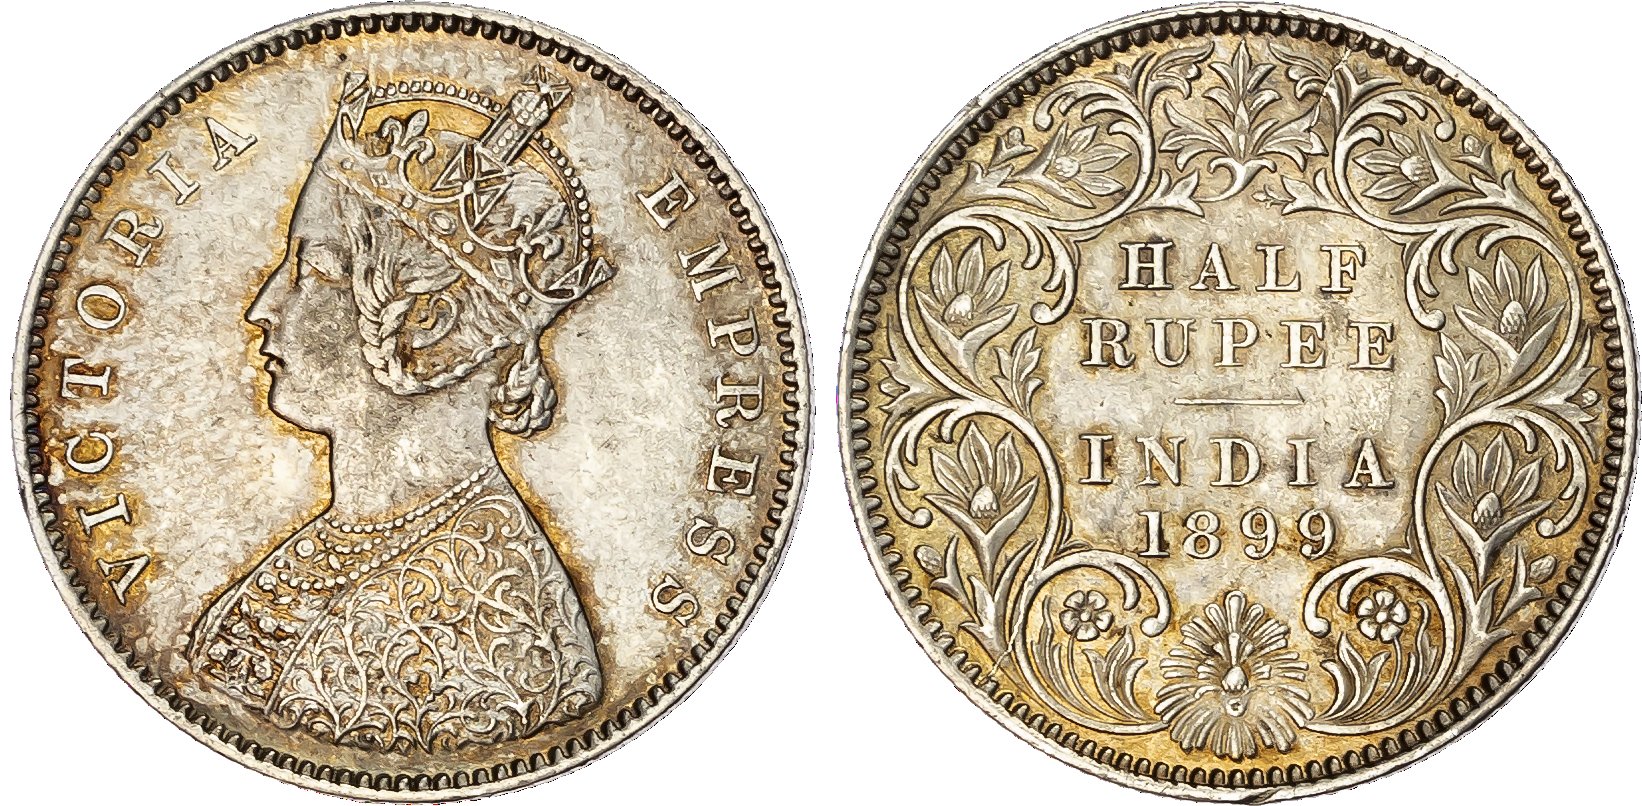 India, EIC, Victoria (1837-1901), silver Half Rupee, 1899